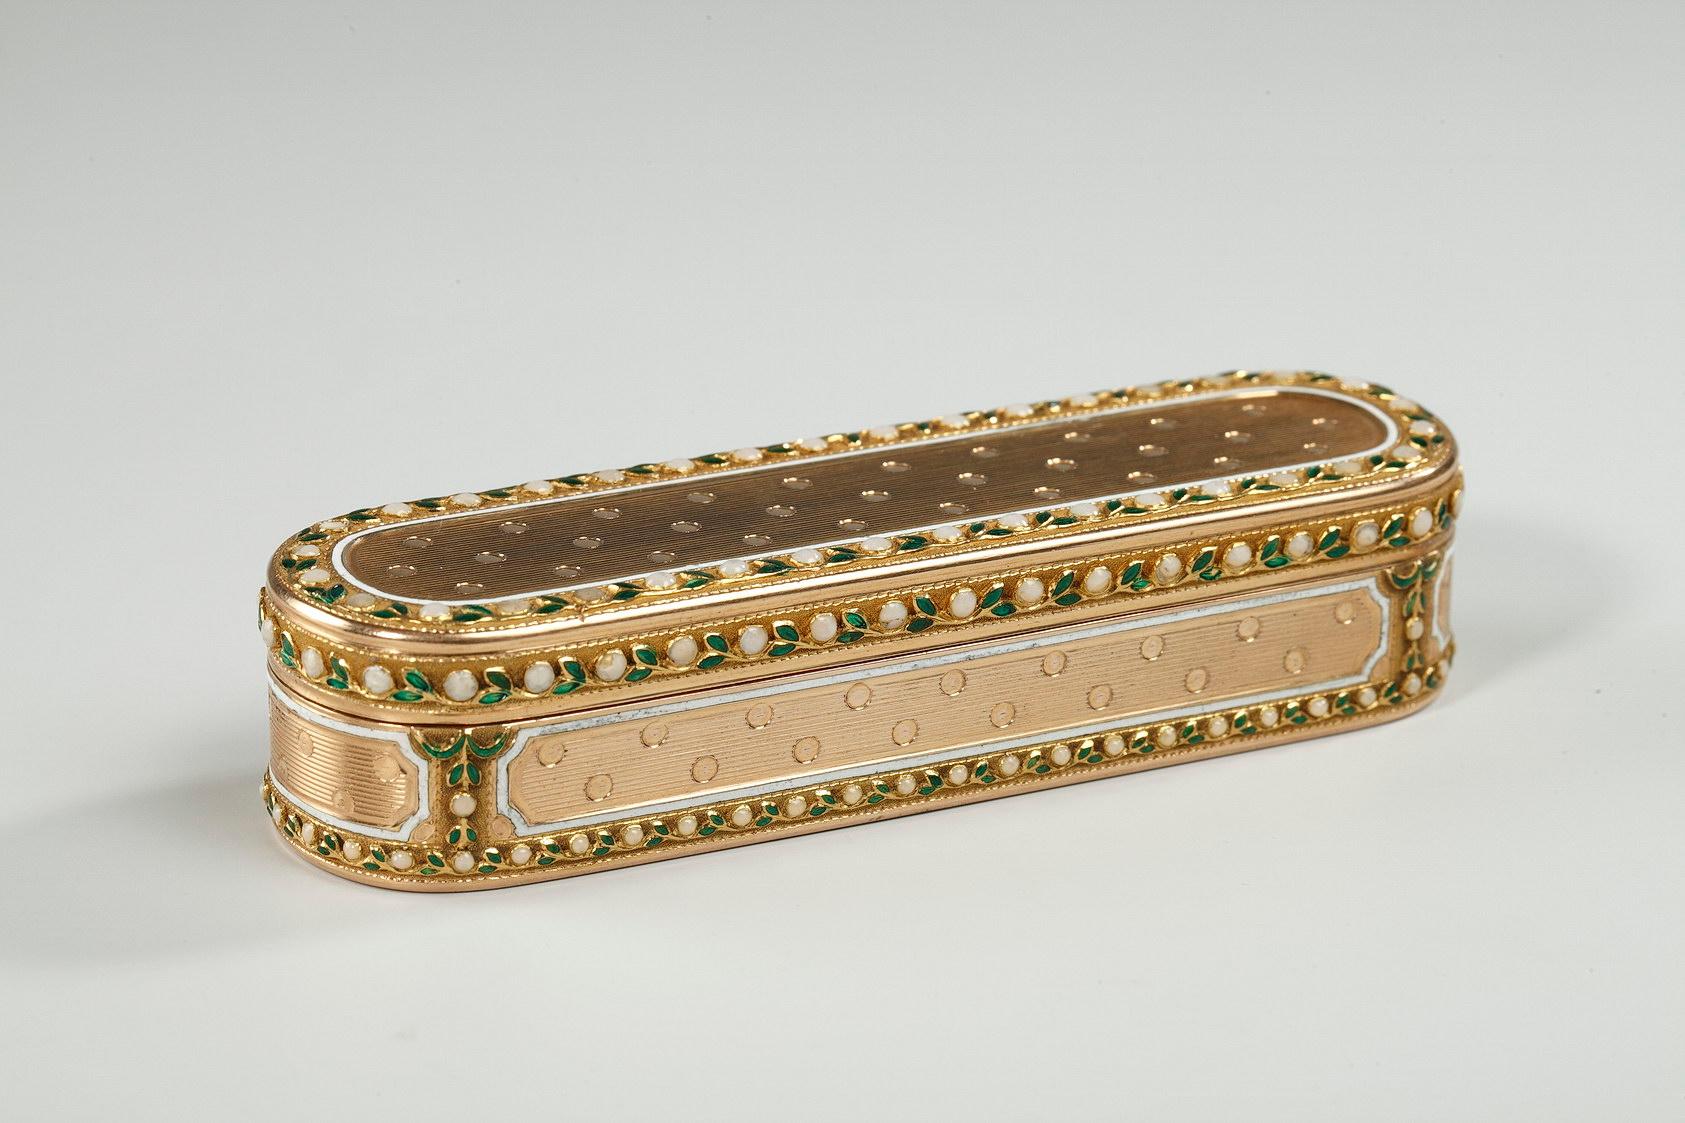 German 18th Century Gold and Enamel Case, Hanau